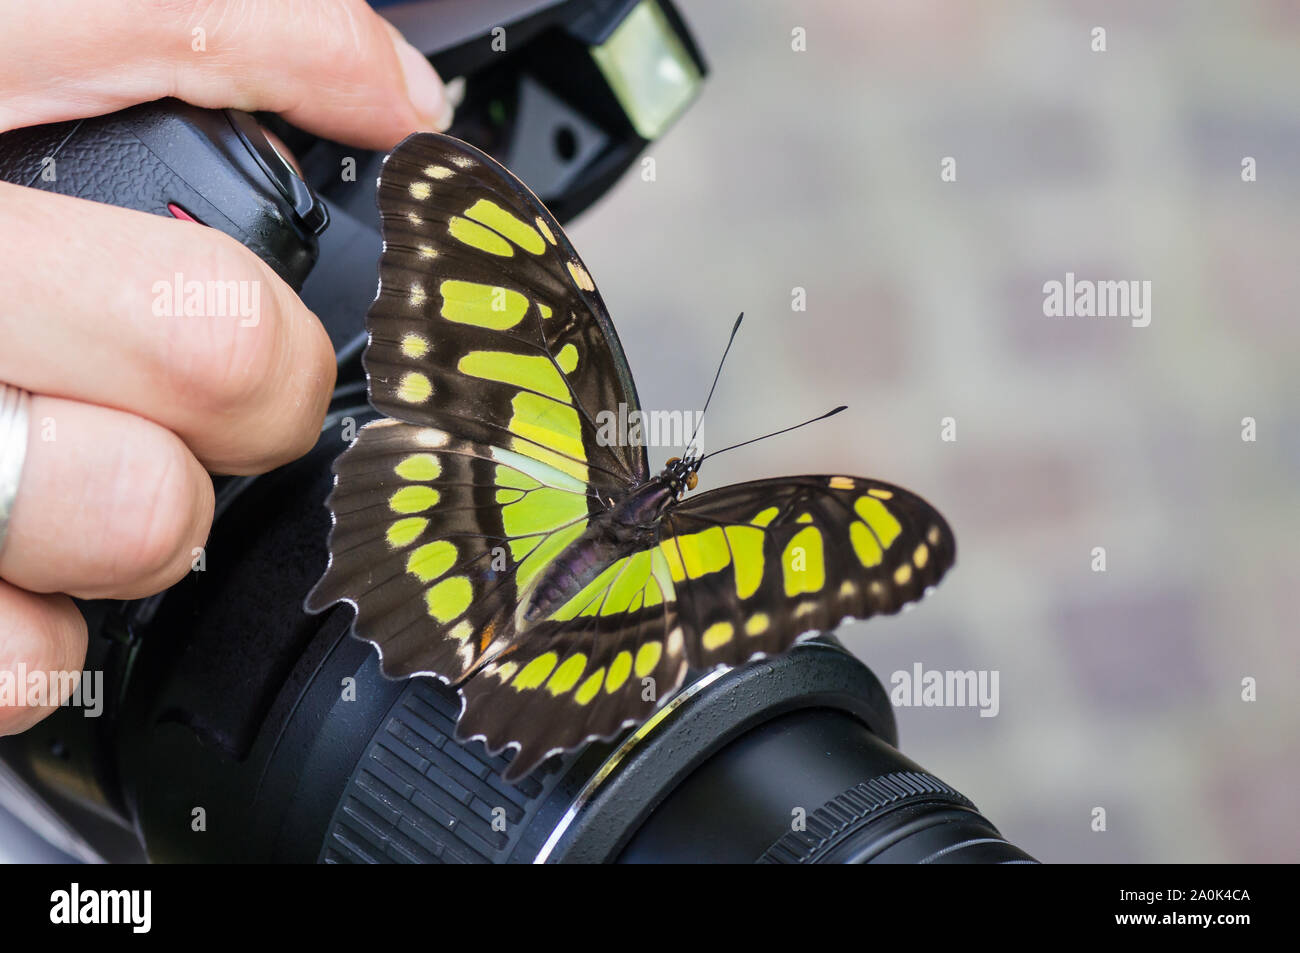 Schöne Schwalbenschwanz Schmetterling auf einer Kamera des Fotografen statt. Stockfoto